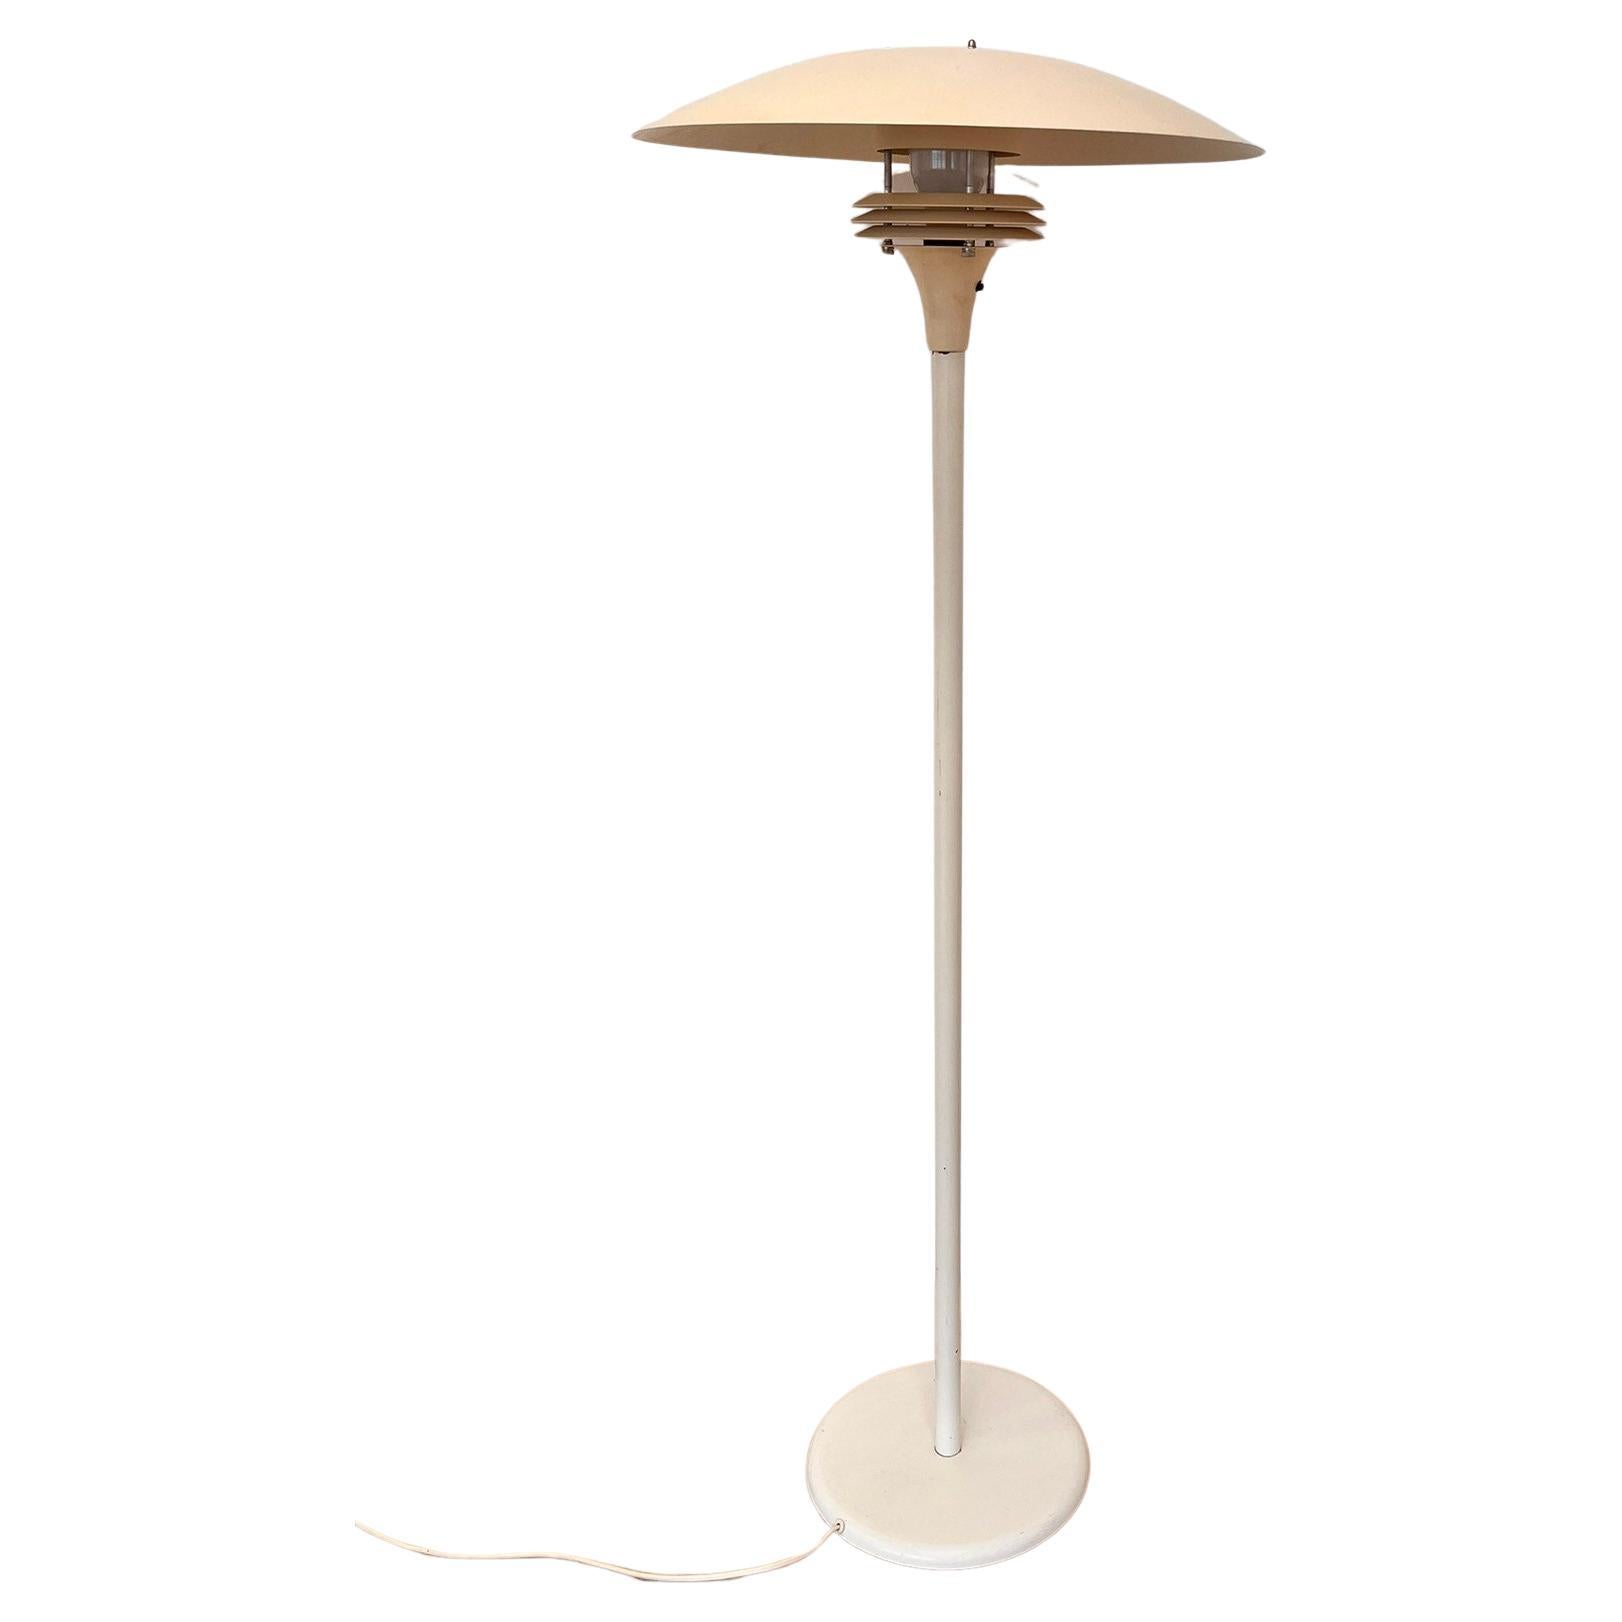 Rare Midcentury Floor Lamp in style of Poul Henningsen, Denmark, 1960s For Sale